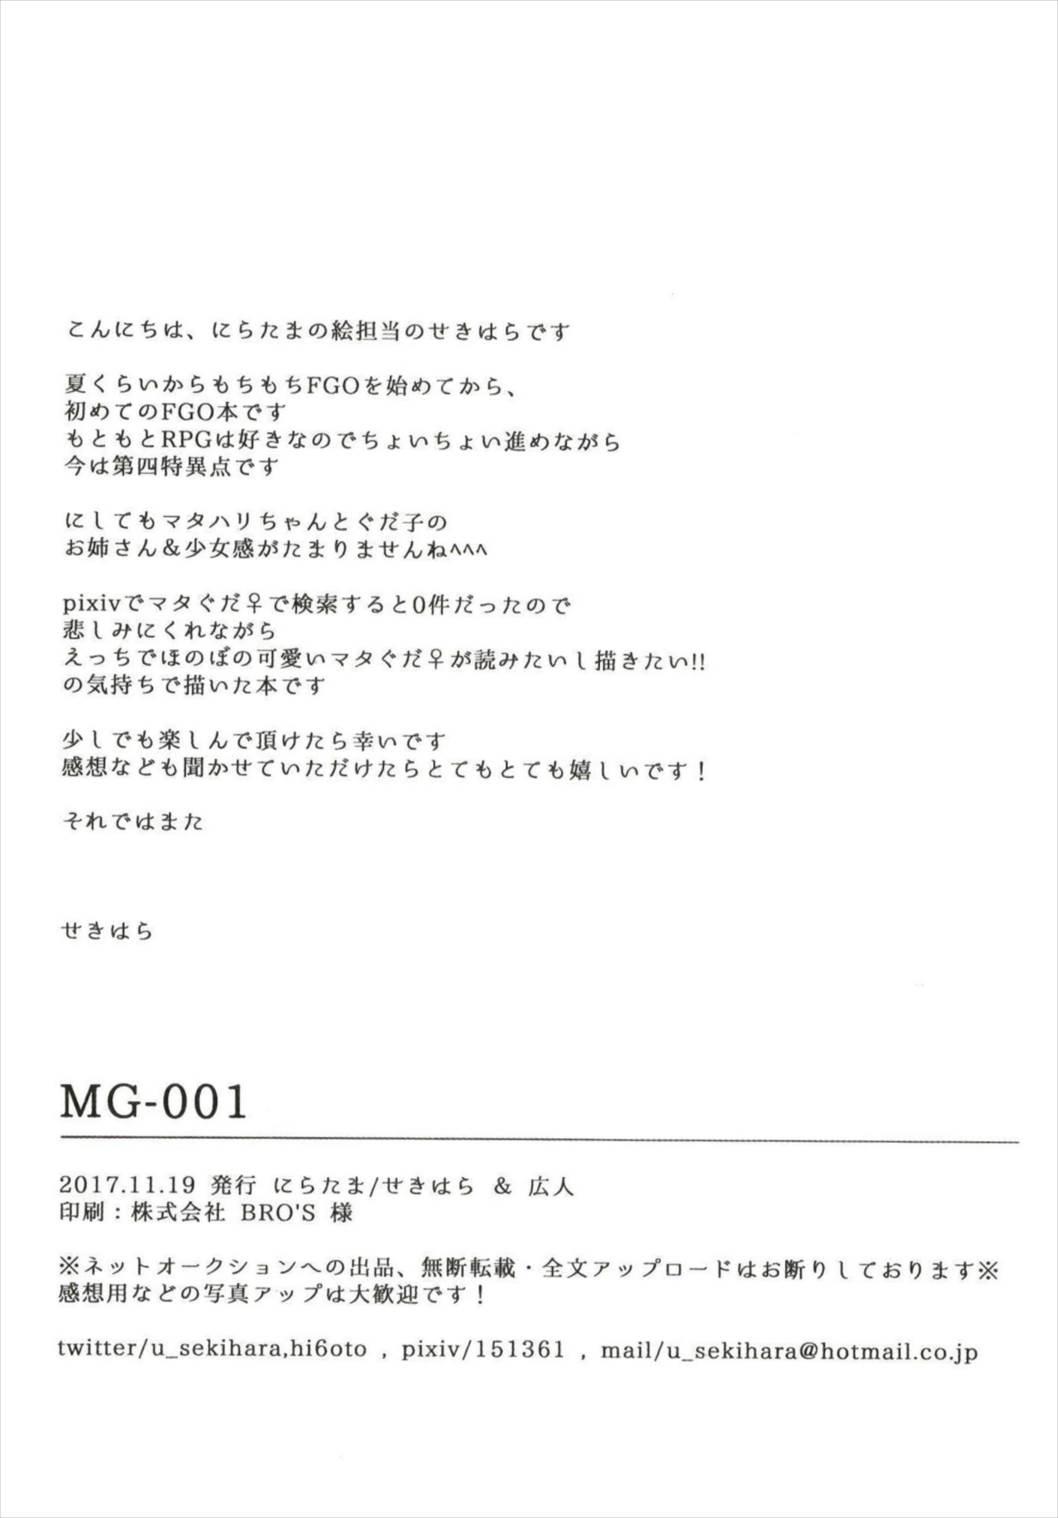 MG-001 22